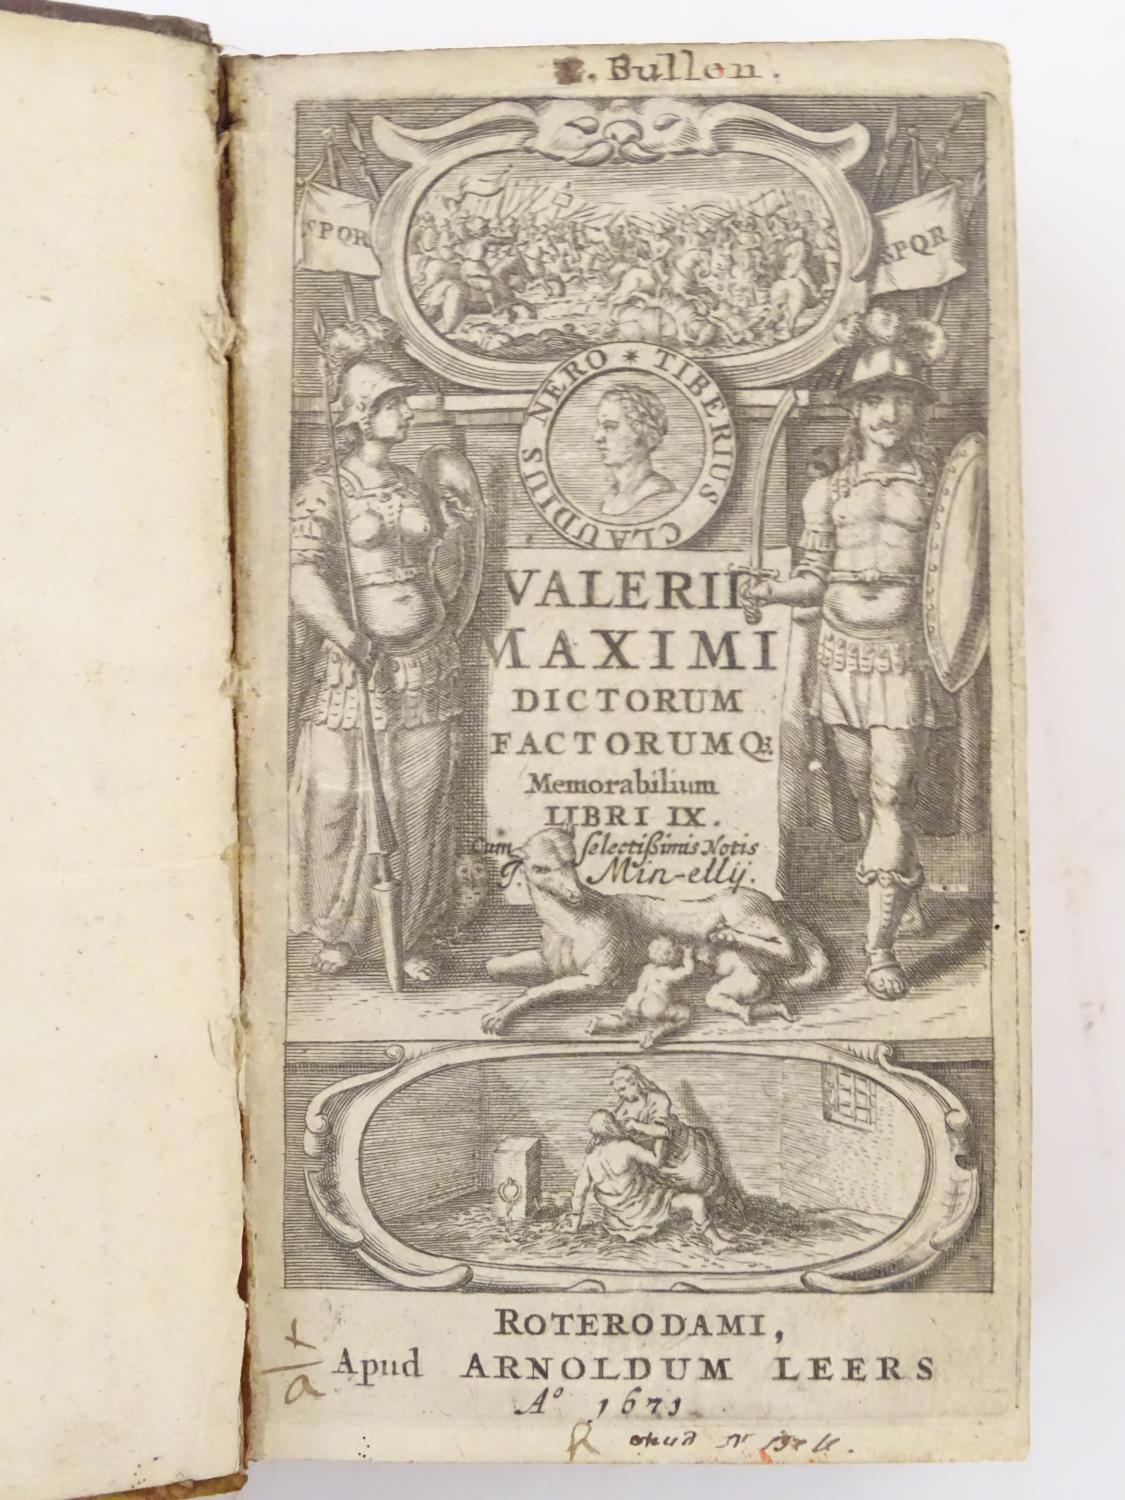 Book: Valerius Maximus, Dictorum Factorumque Memorabilium, by Johnannis Minellii, pub. in Latin by - Image 2 of 6